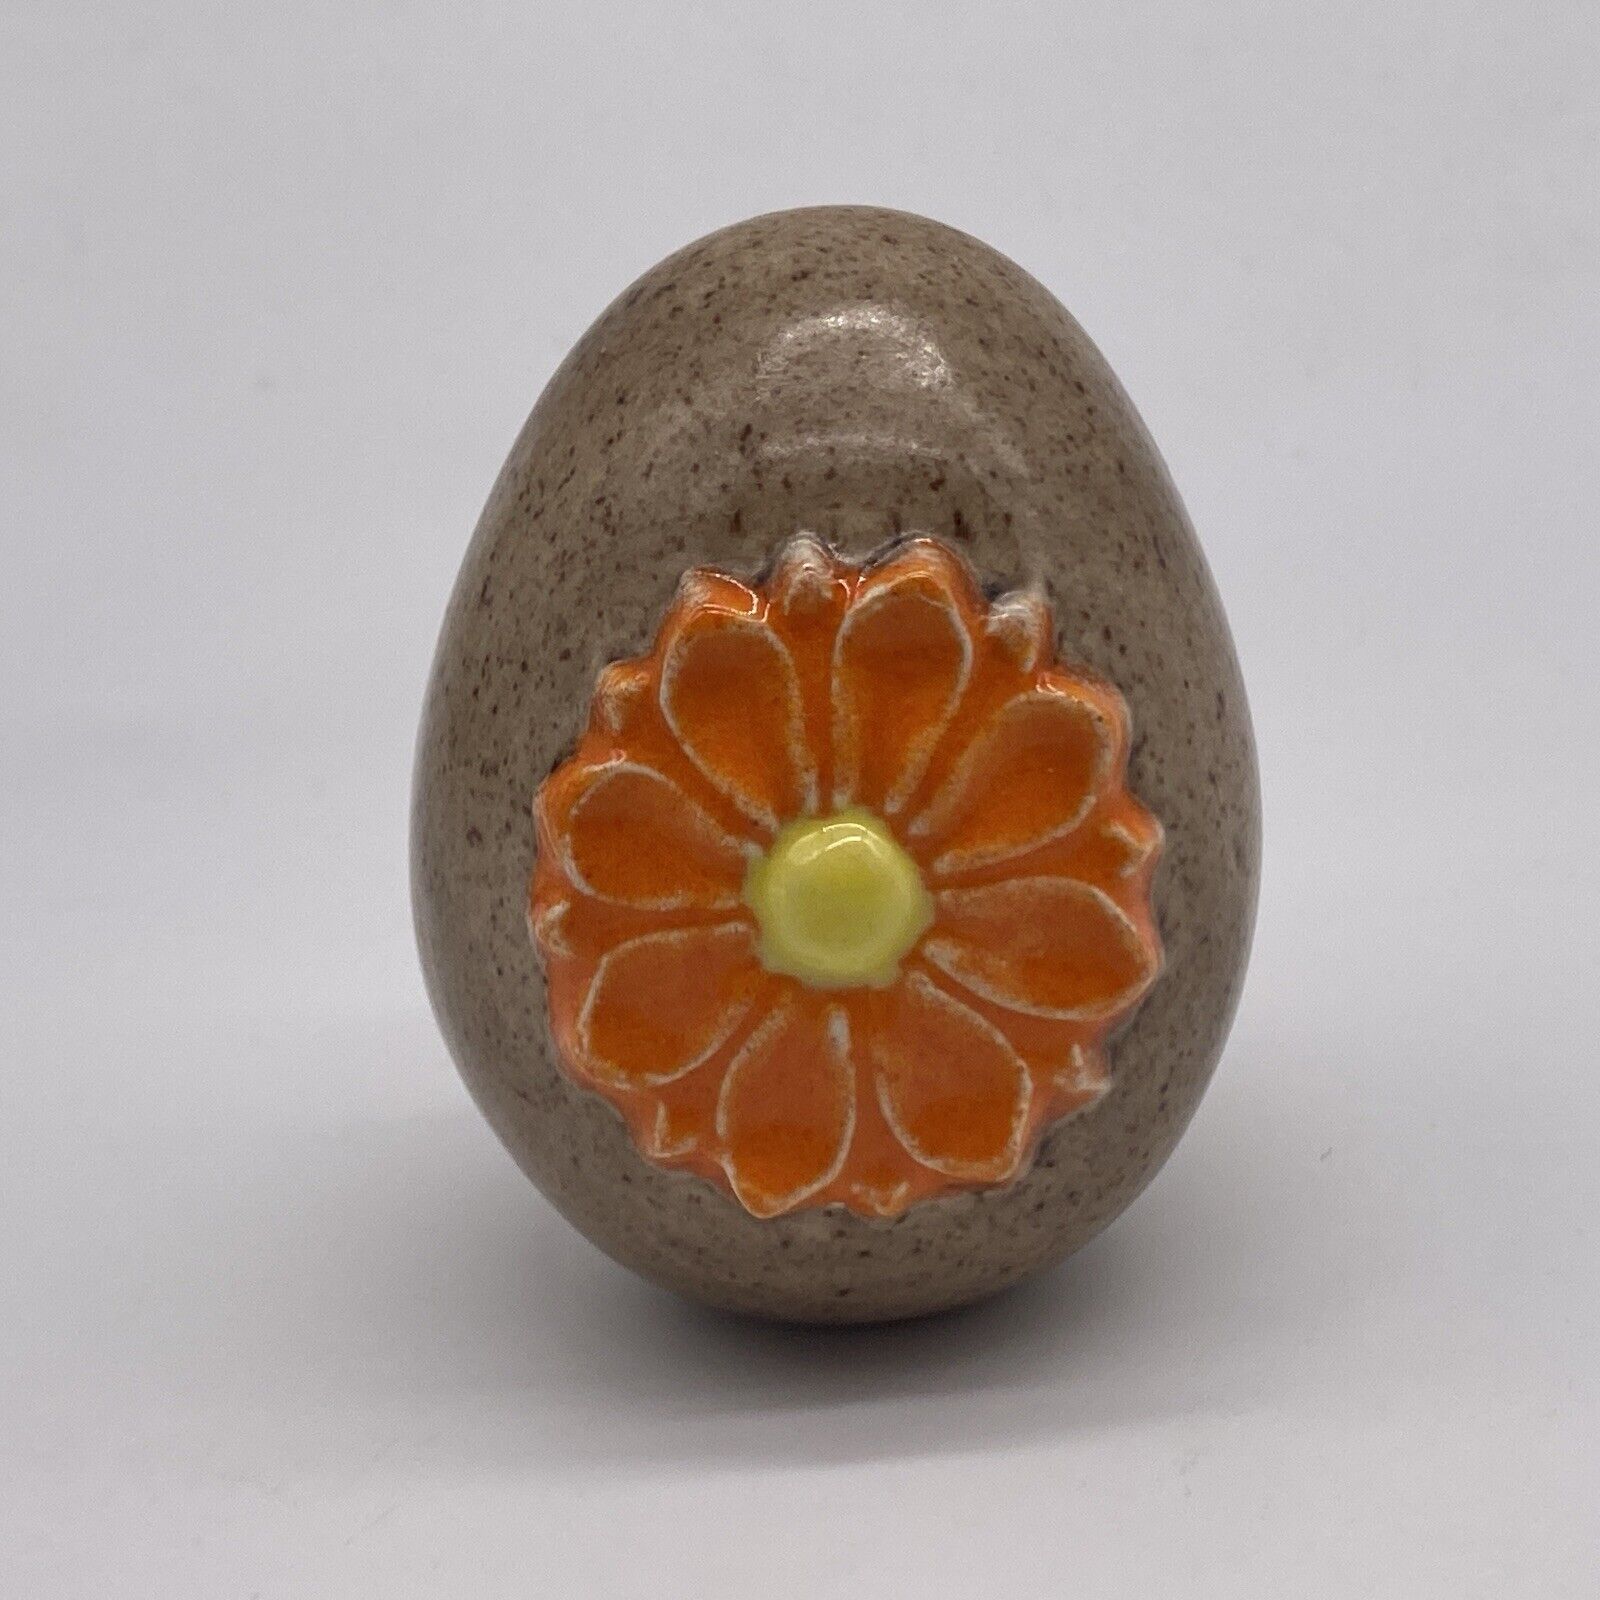 Vintage Ceramic Brown Orange Flower Easter Egg Decorative Figurine